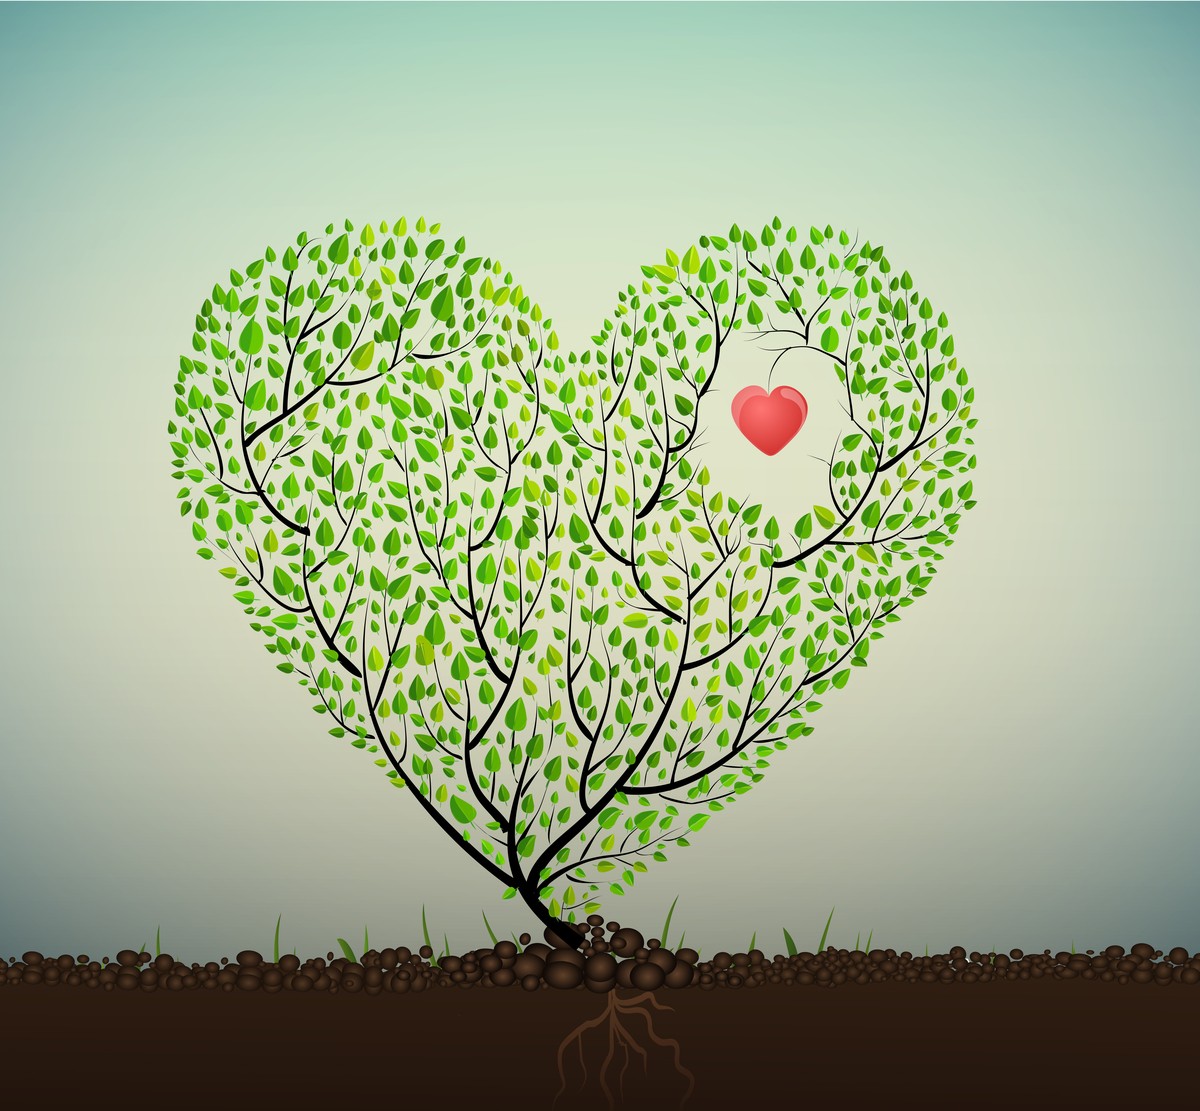 Ταπετσαρία Φενγκ Σουι - Ασία 15 Το δέντρο της καρδιάς